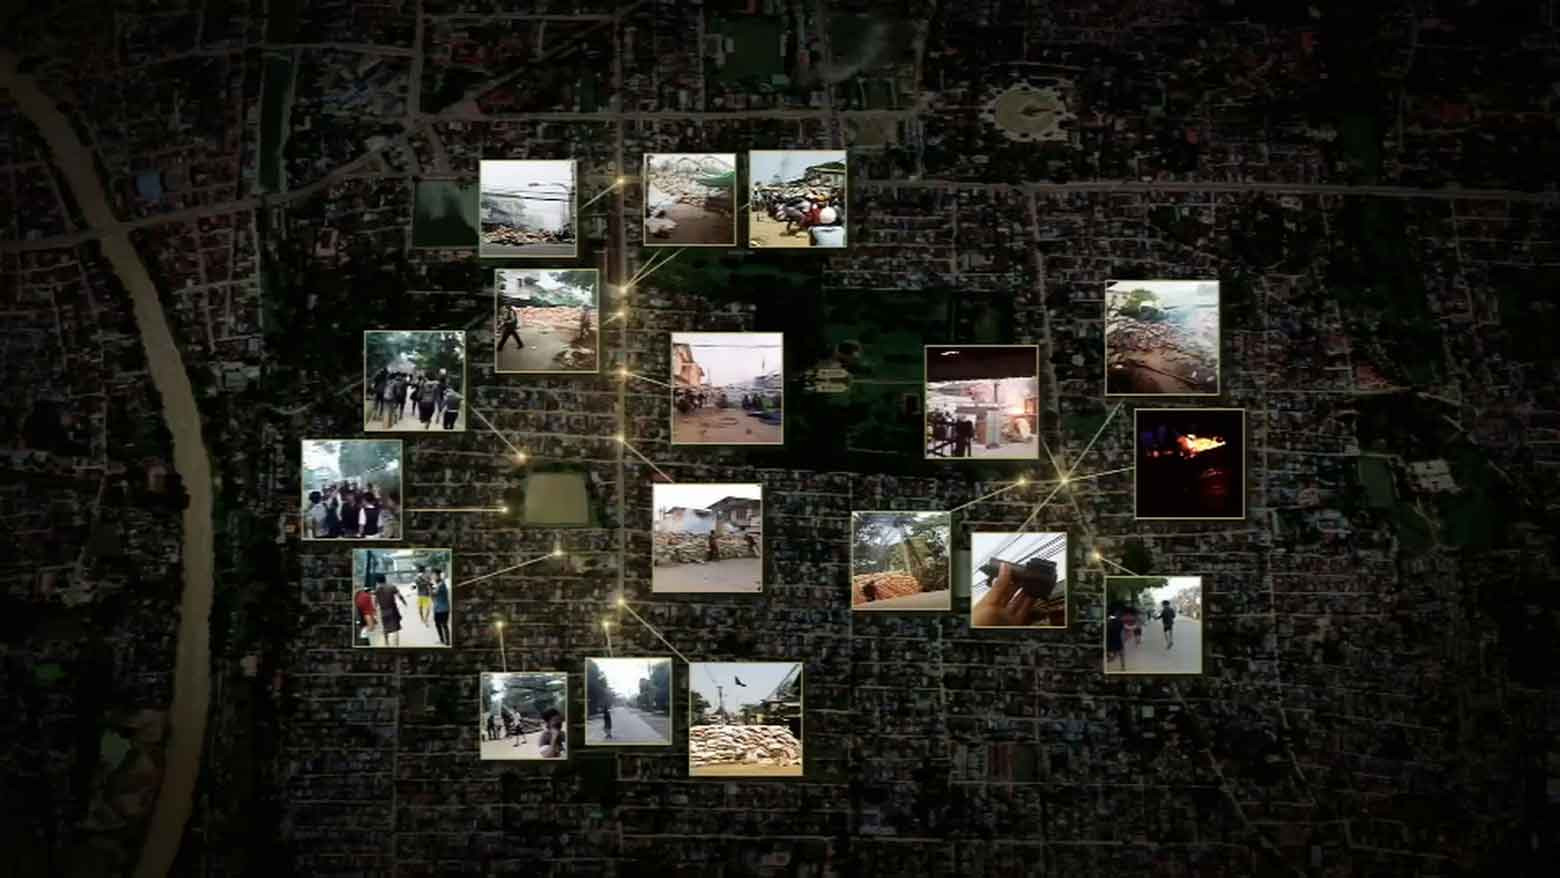 Digital investigation sheds light on deadly incident in Myanmar